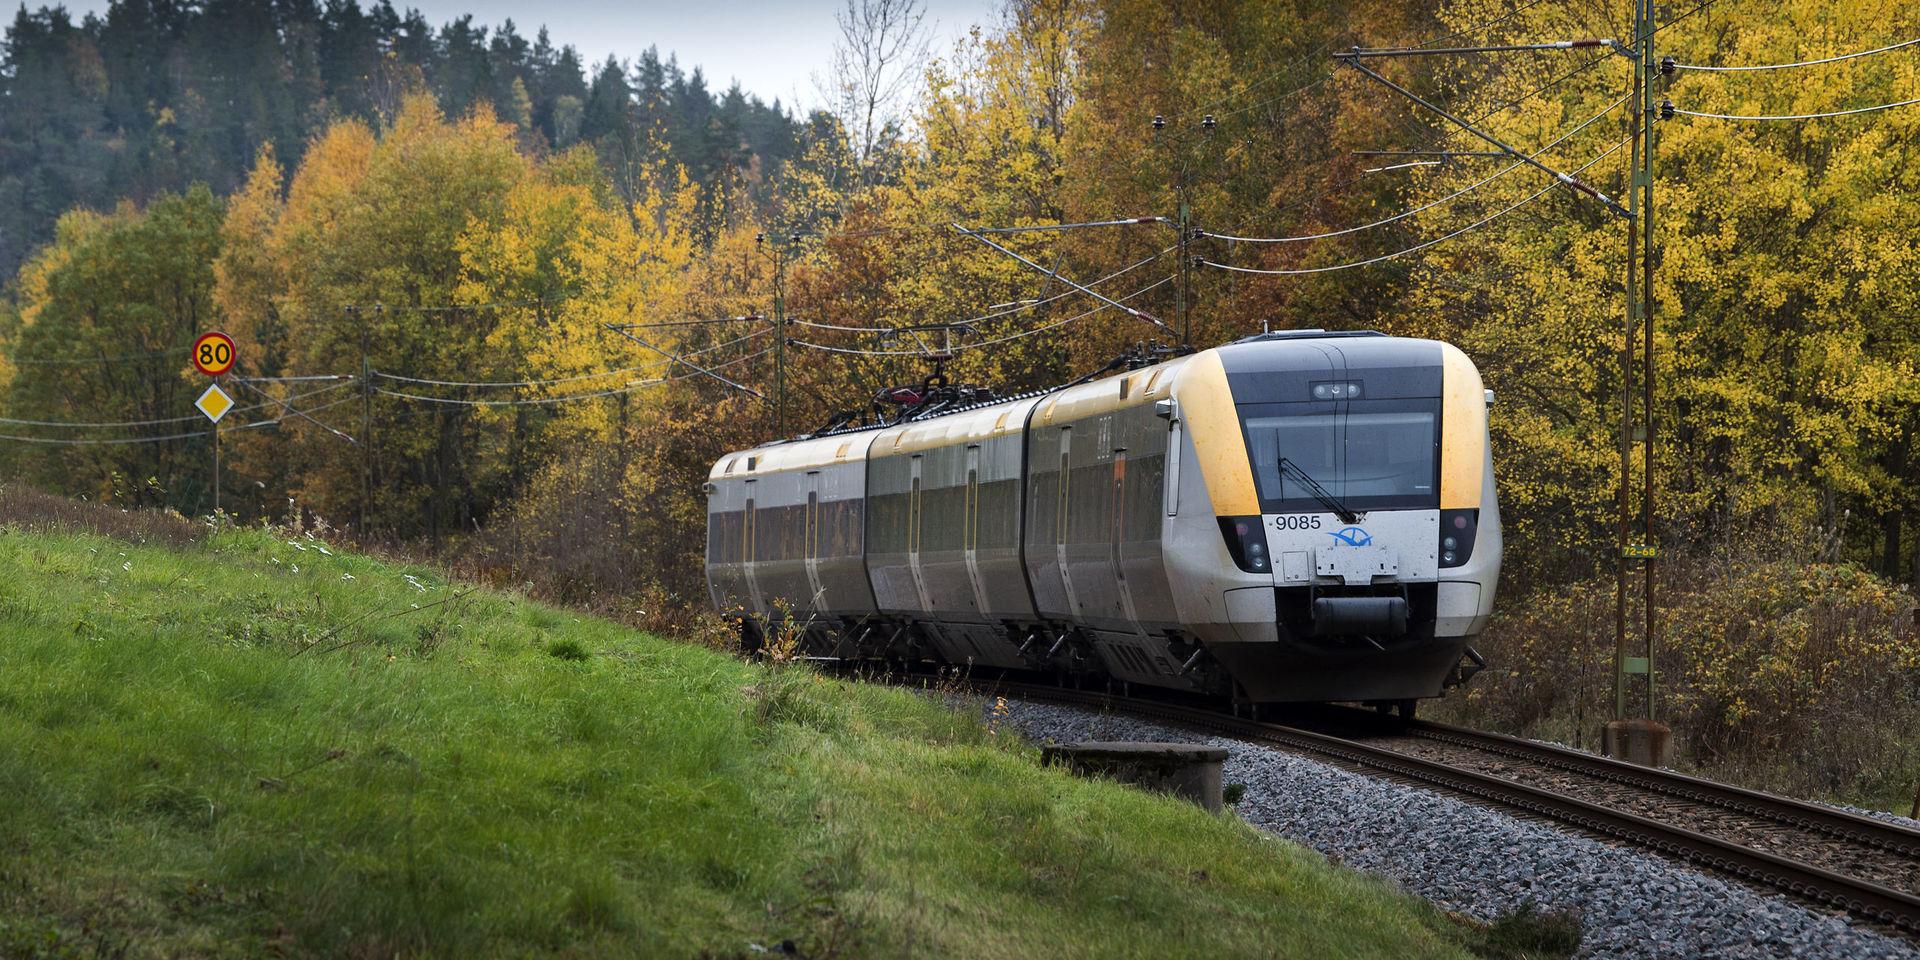 På måndag den 22 oktober blir det störningar i tågtrafiken.